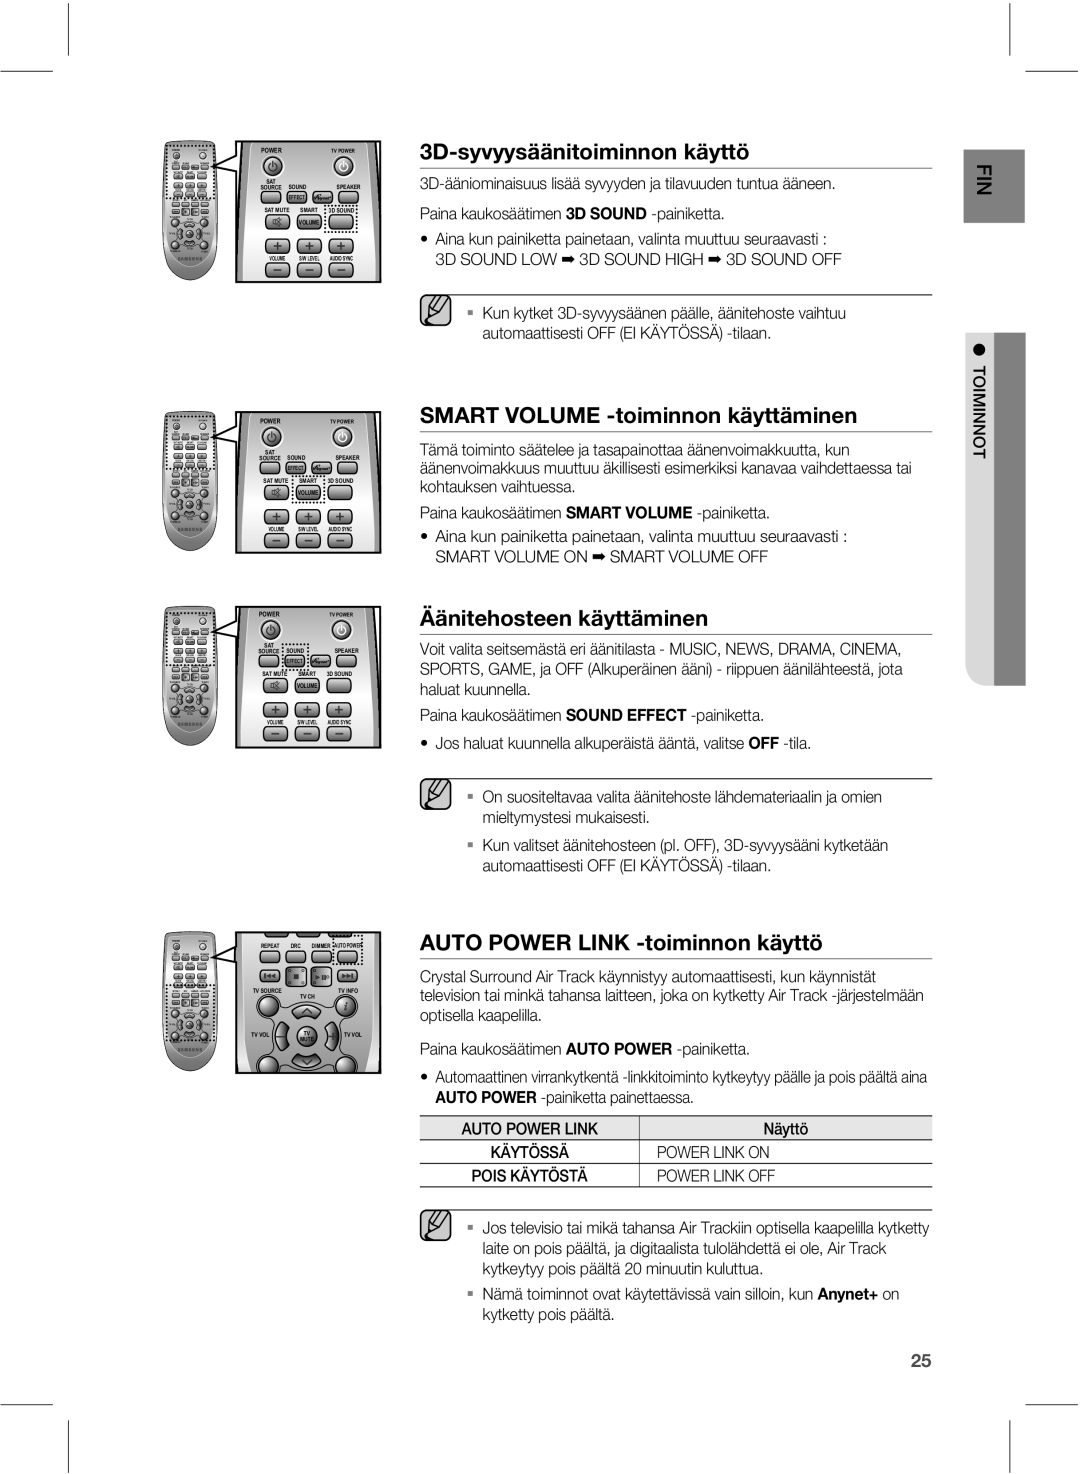 Samsung HW-E551/XE manual %TzwzztêêojupjnjoopoLêzuuú, 4.3570-6.&UPJNJOOPOLÊZUUÊNJOFO, ­ÊojufiptuffoLêzuuênjofo 